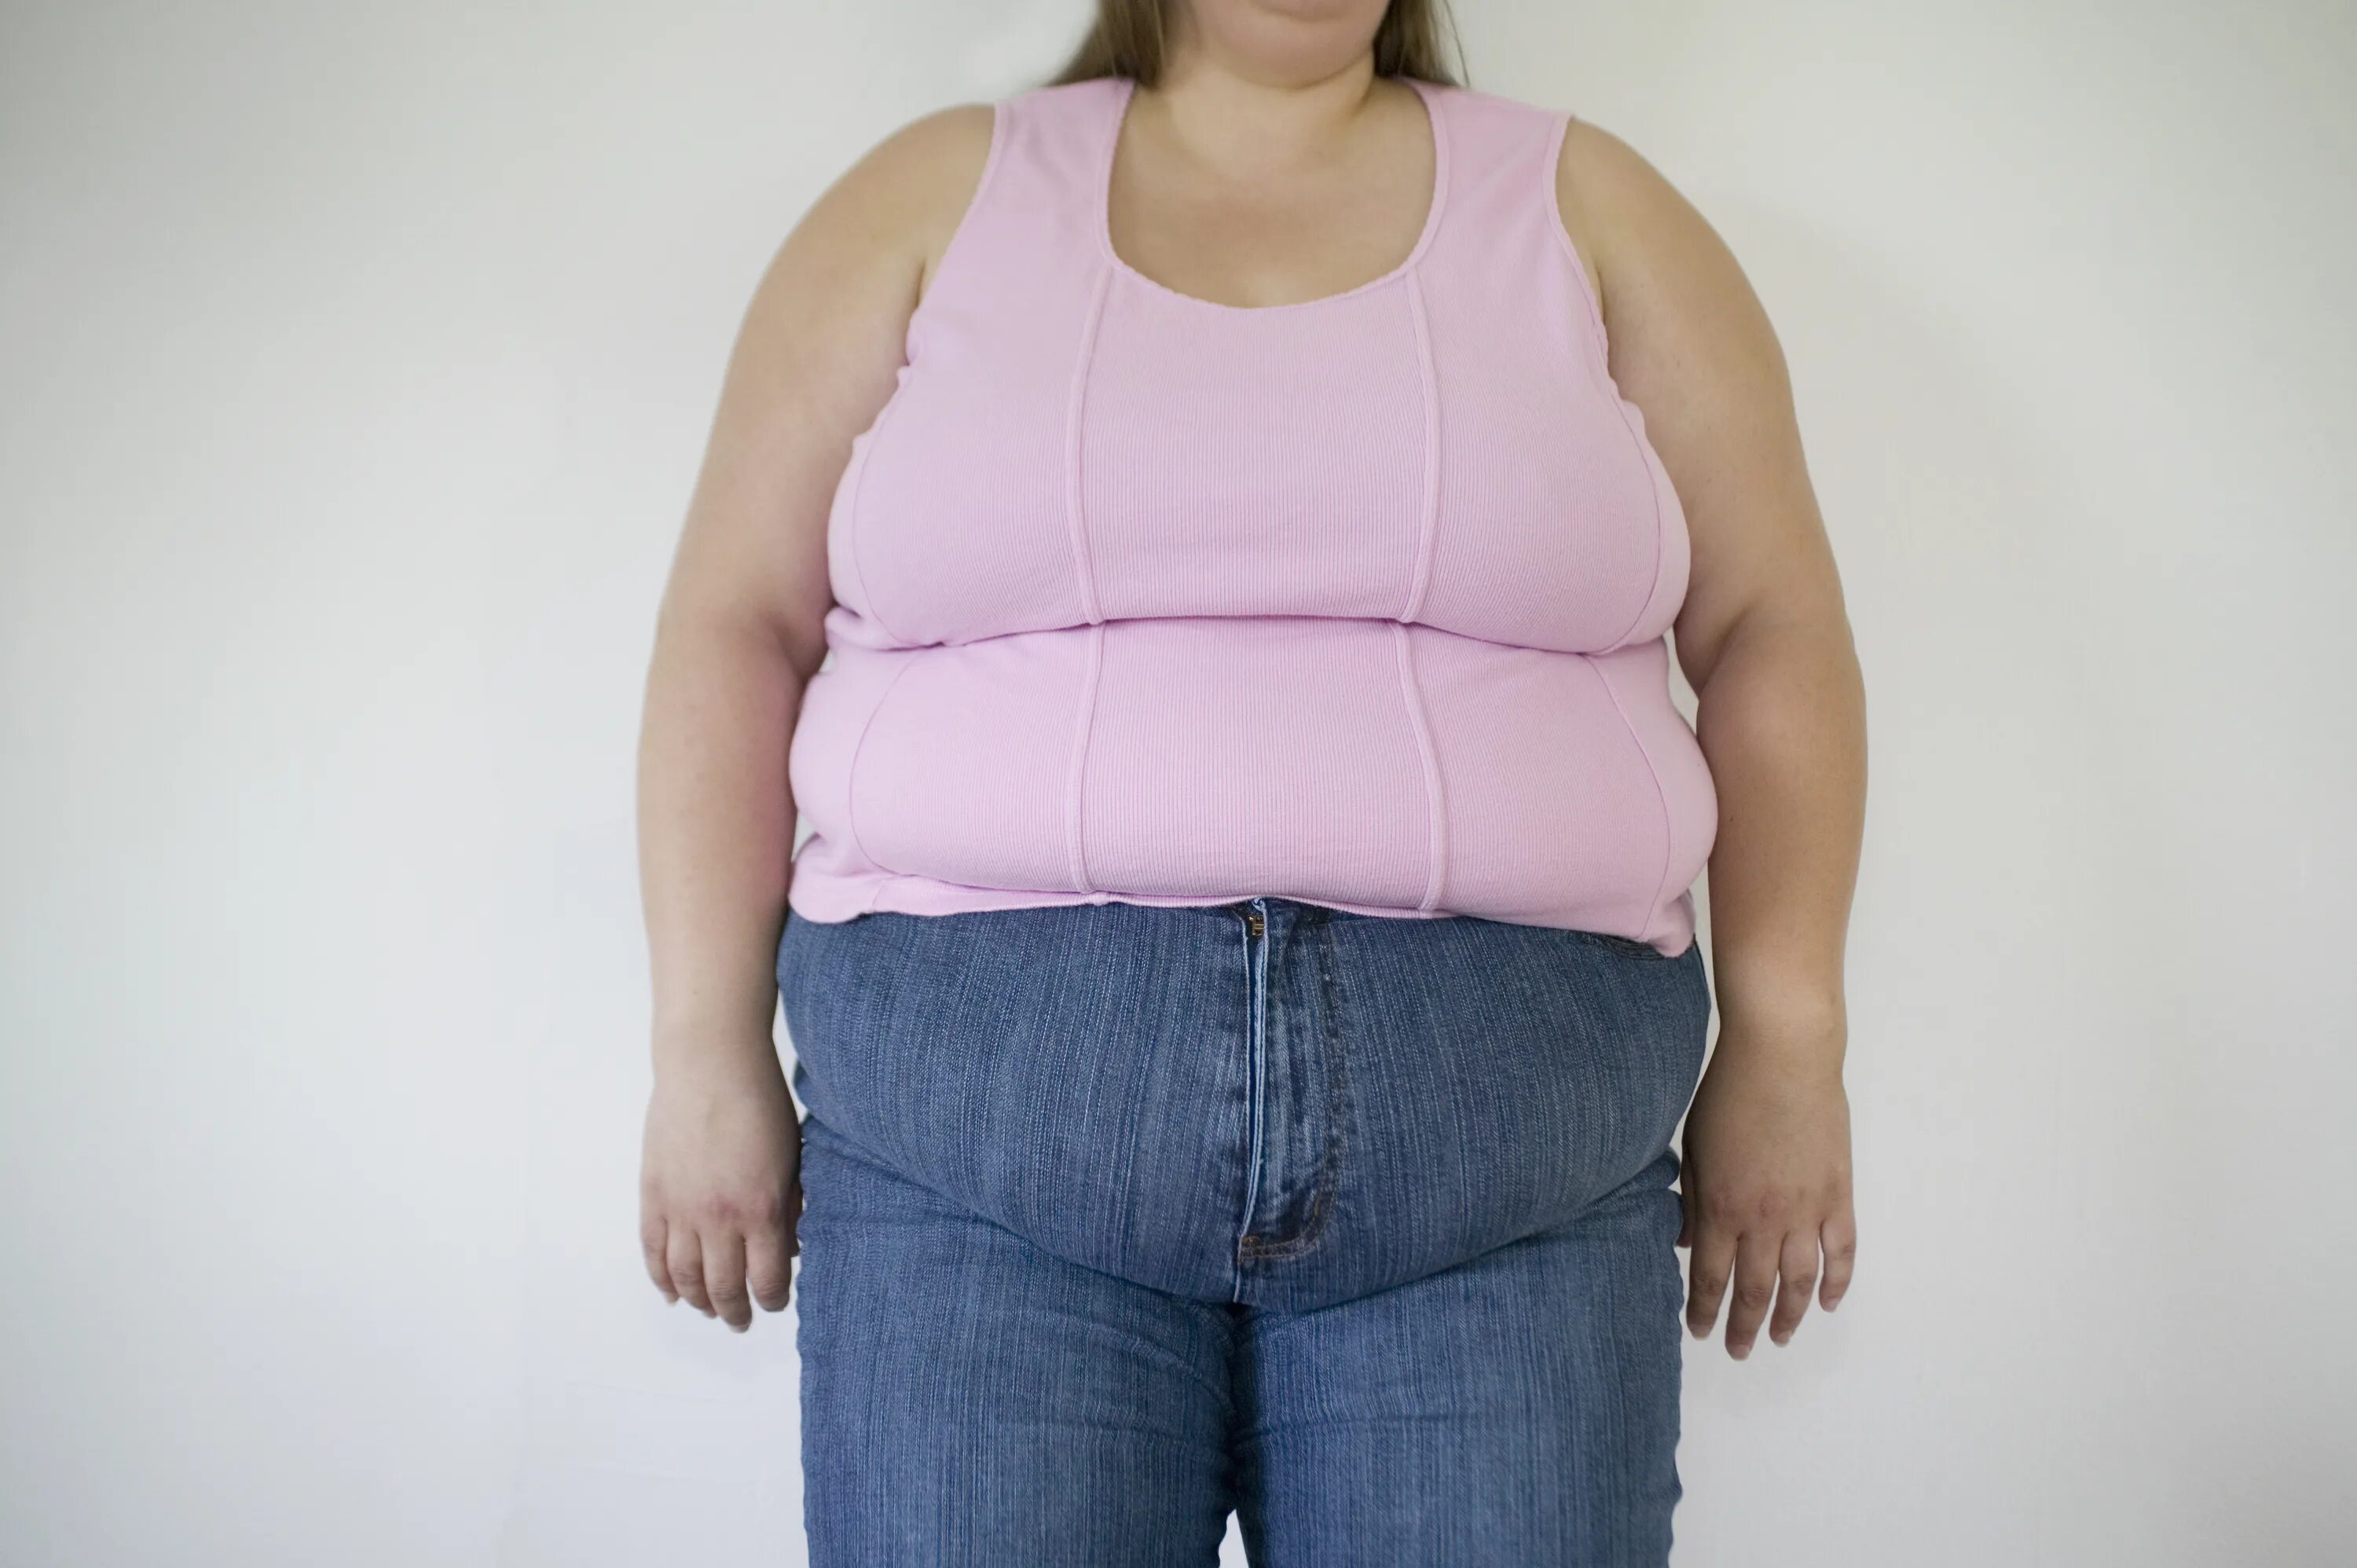 Сайт толстый женщина. Люди с избыточным весом. Ожирение у девушек. Женщина с лишним весом.